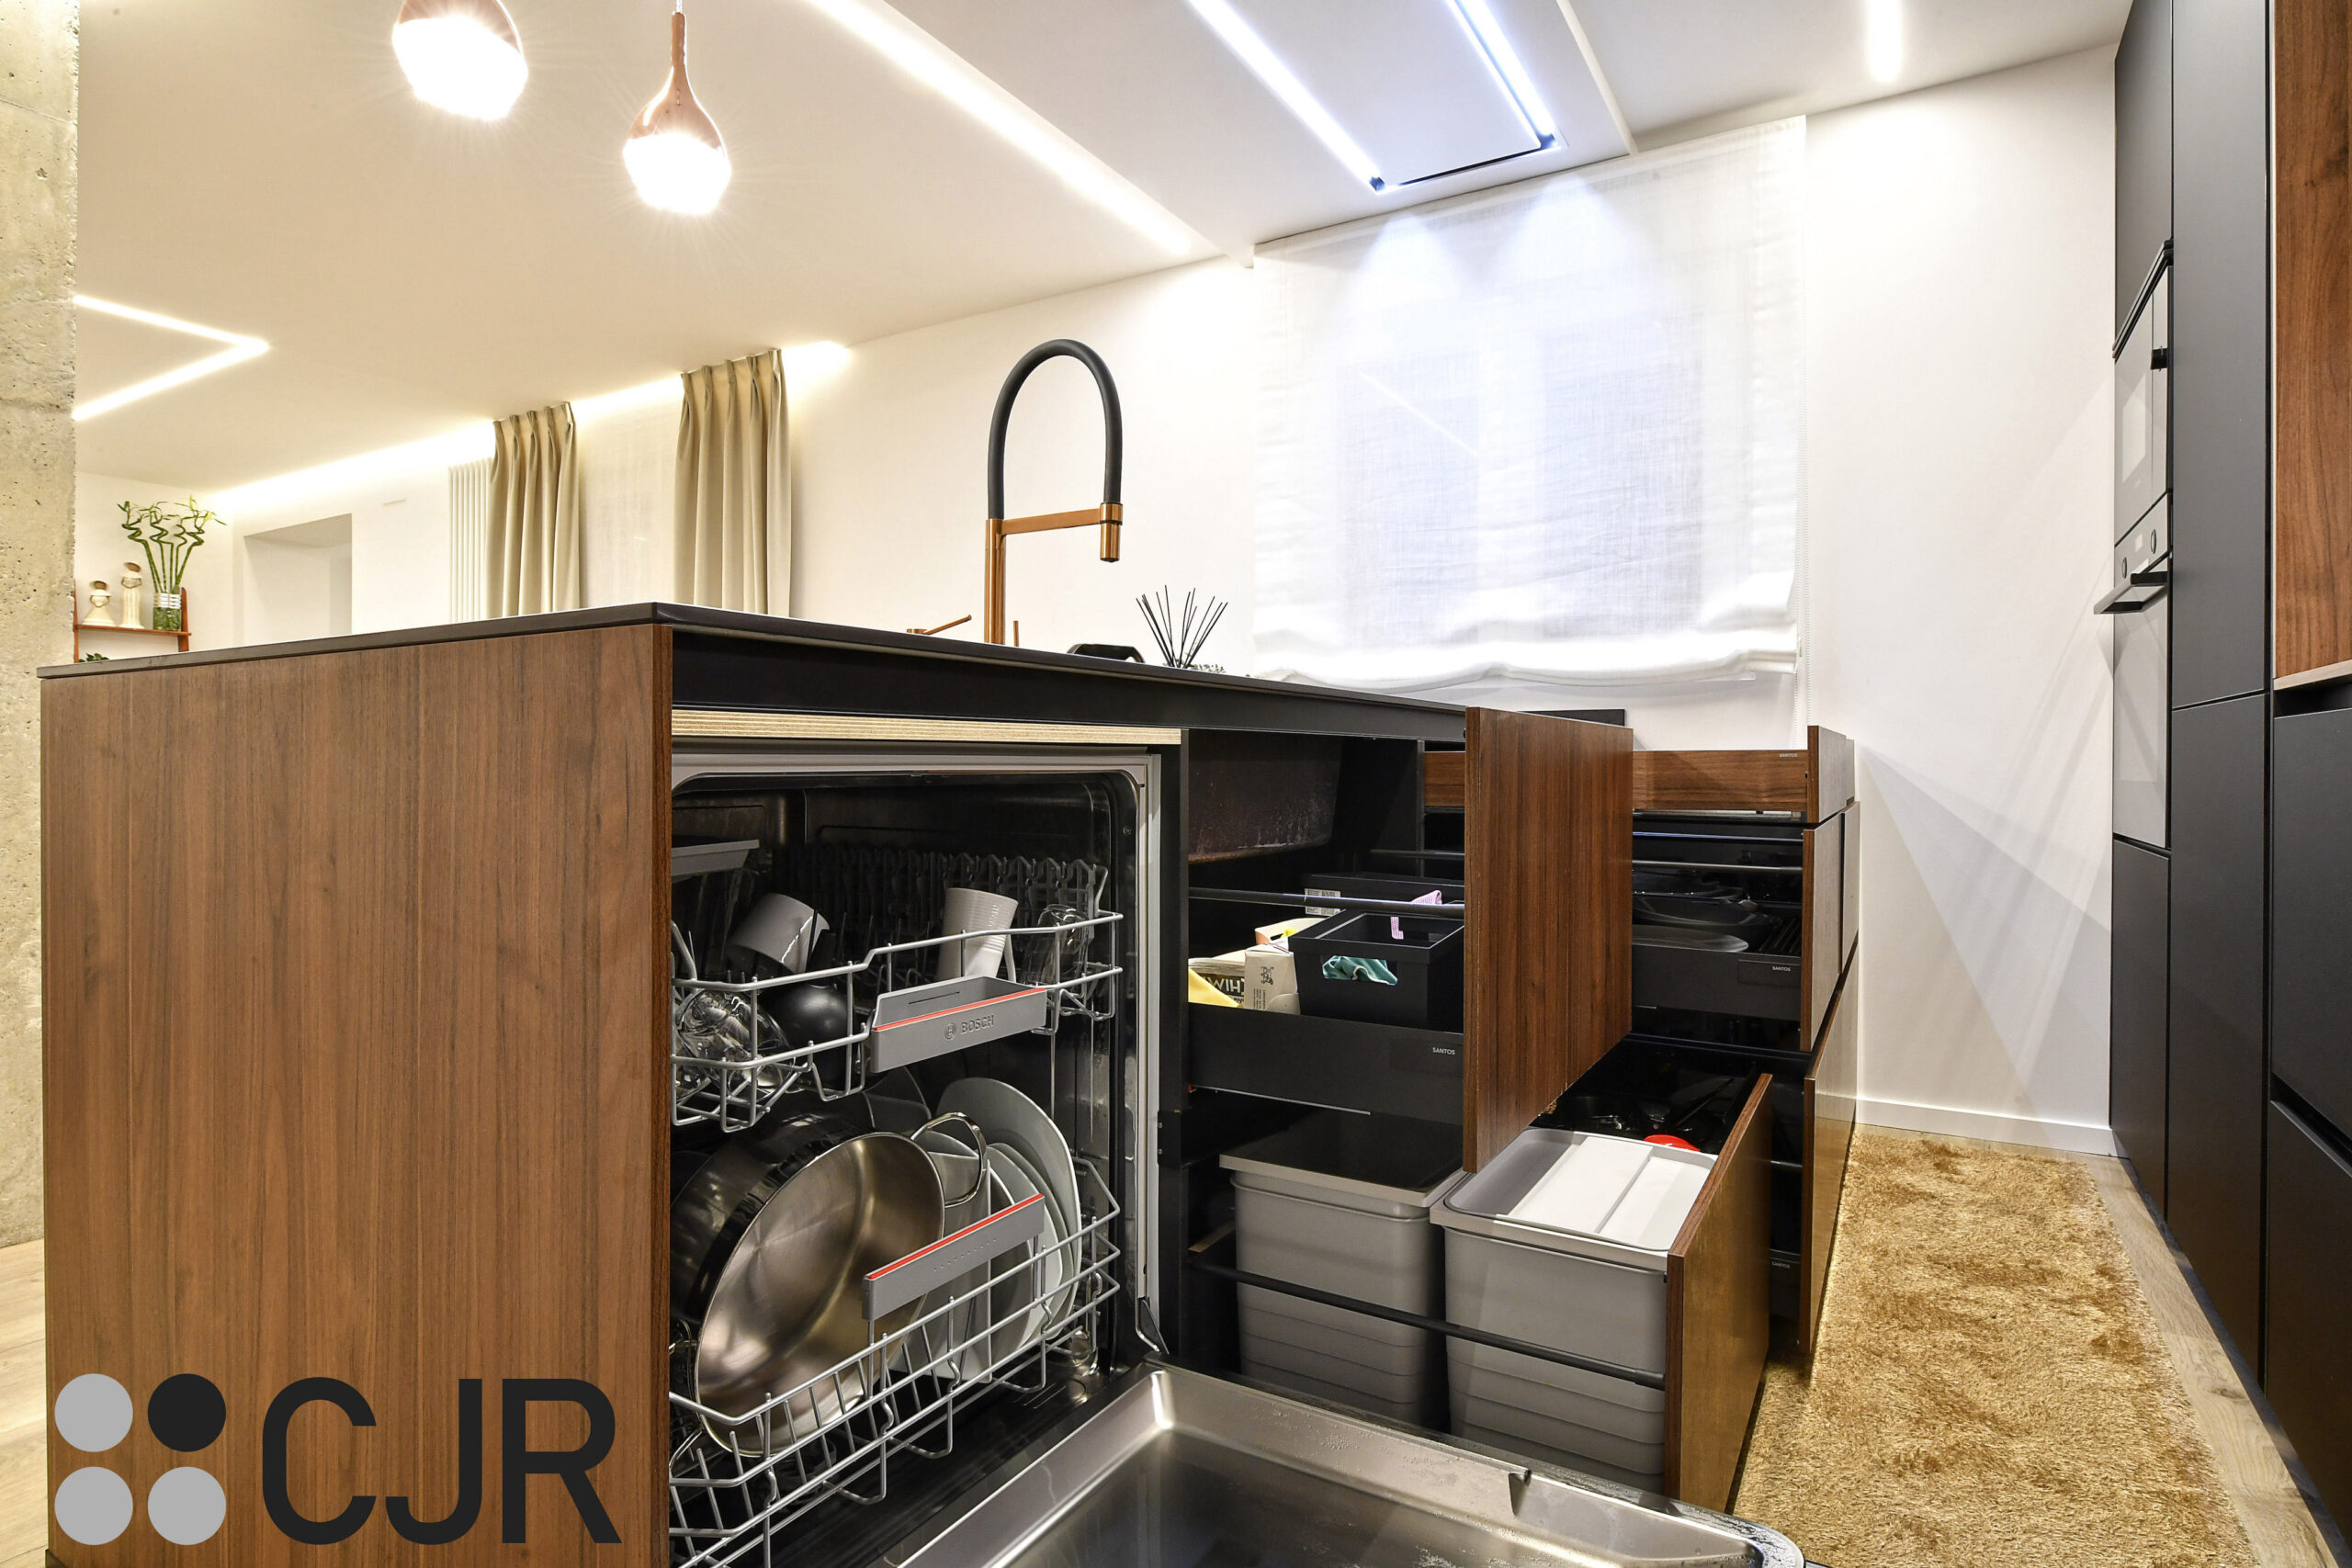 lavavajillas integrado en cocina negra y madera abierta al salon cjr